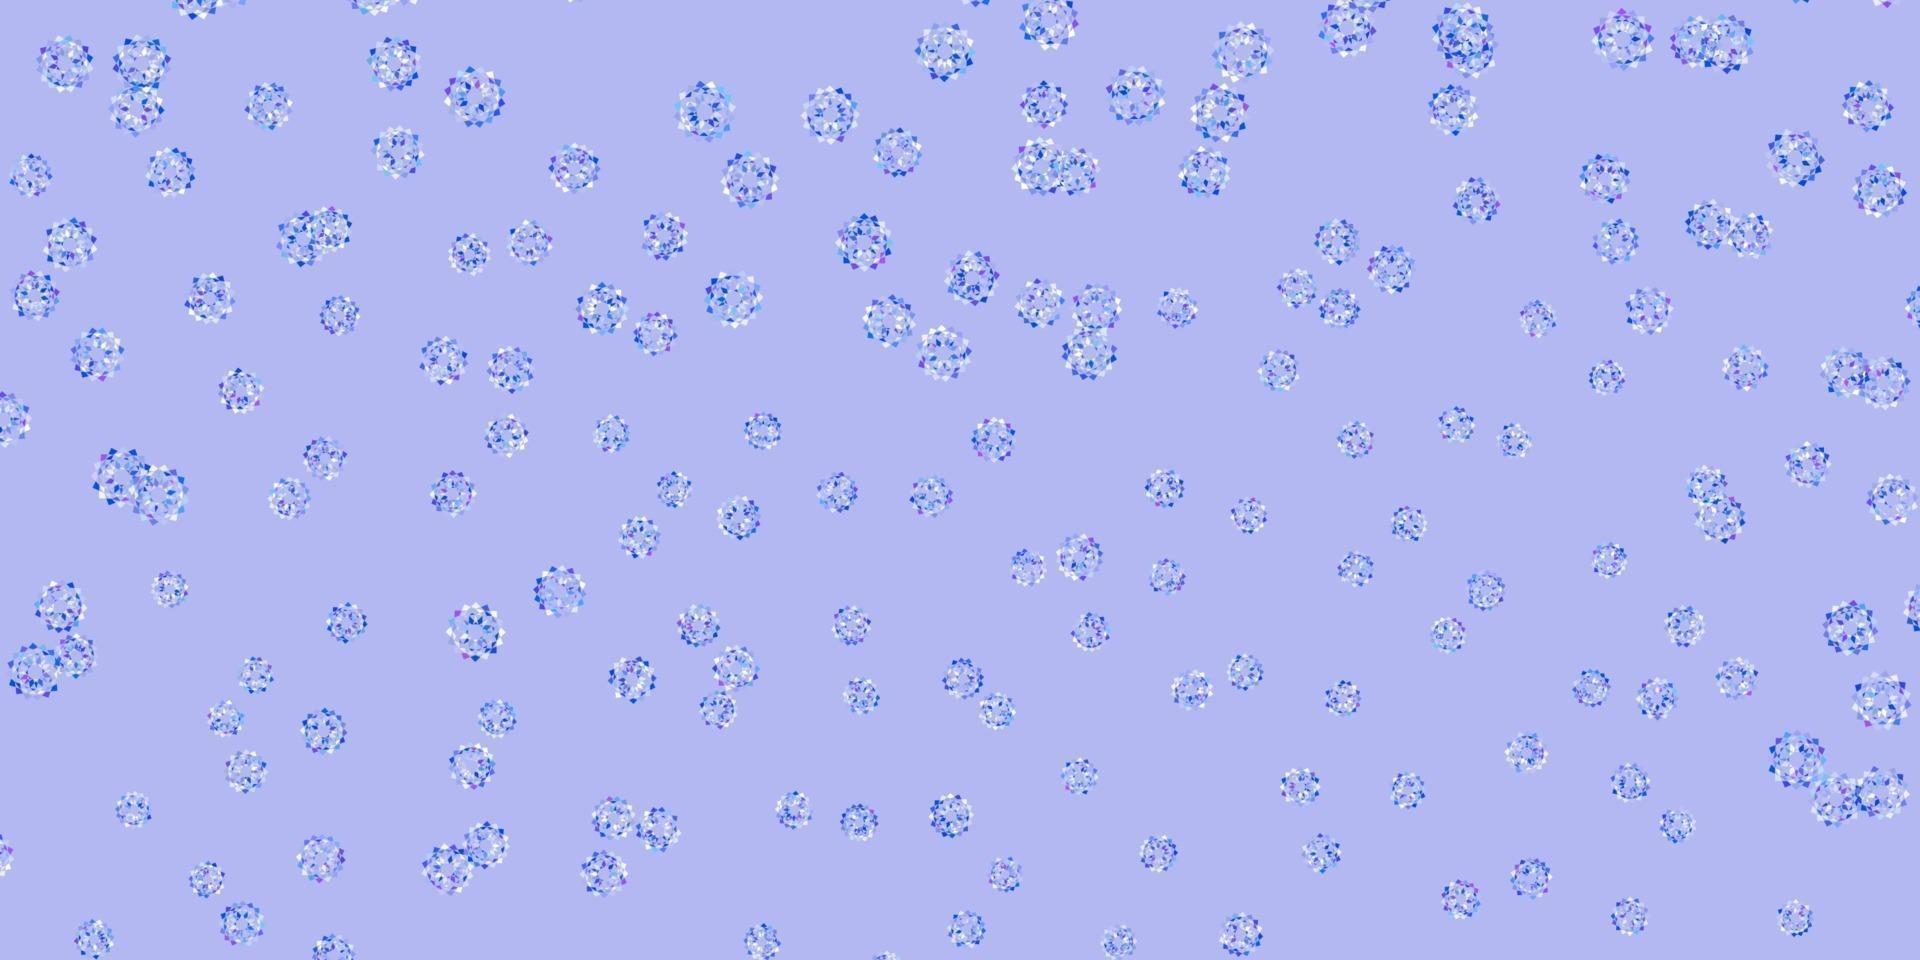 texture de doodle vecteur rose clair, bleu avec des fleurs.